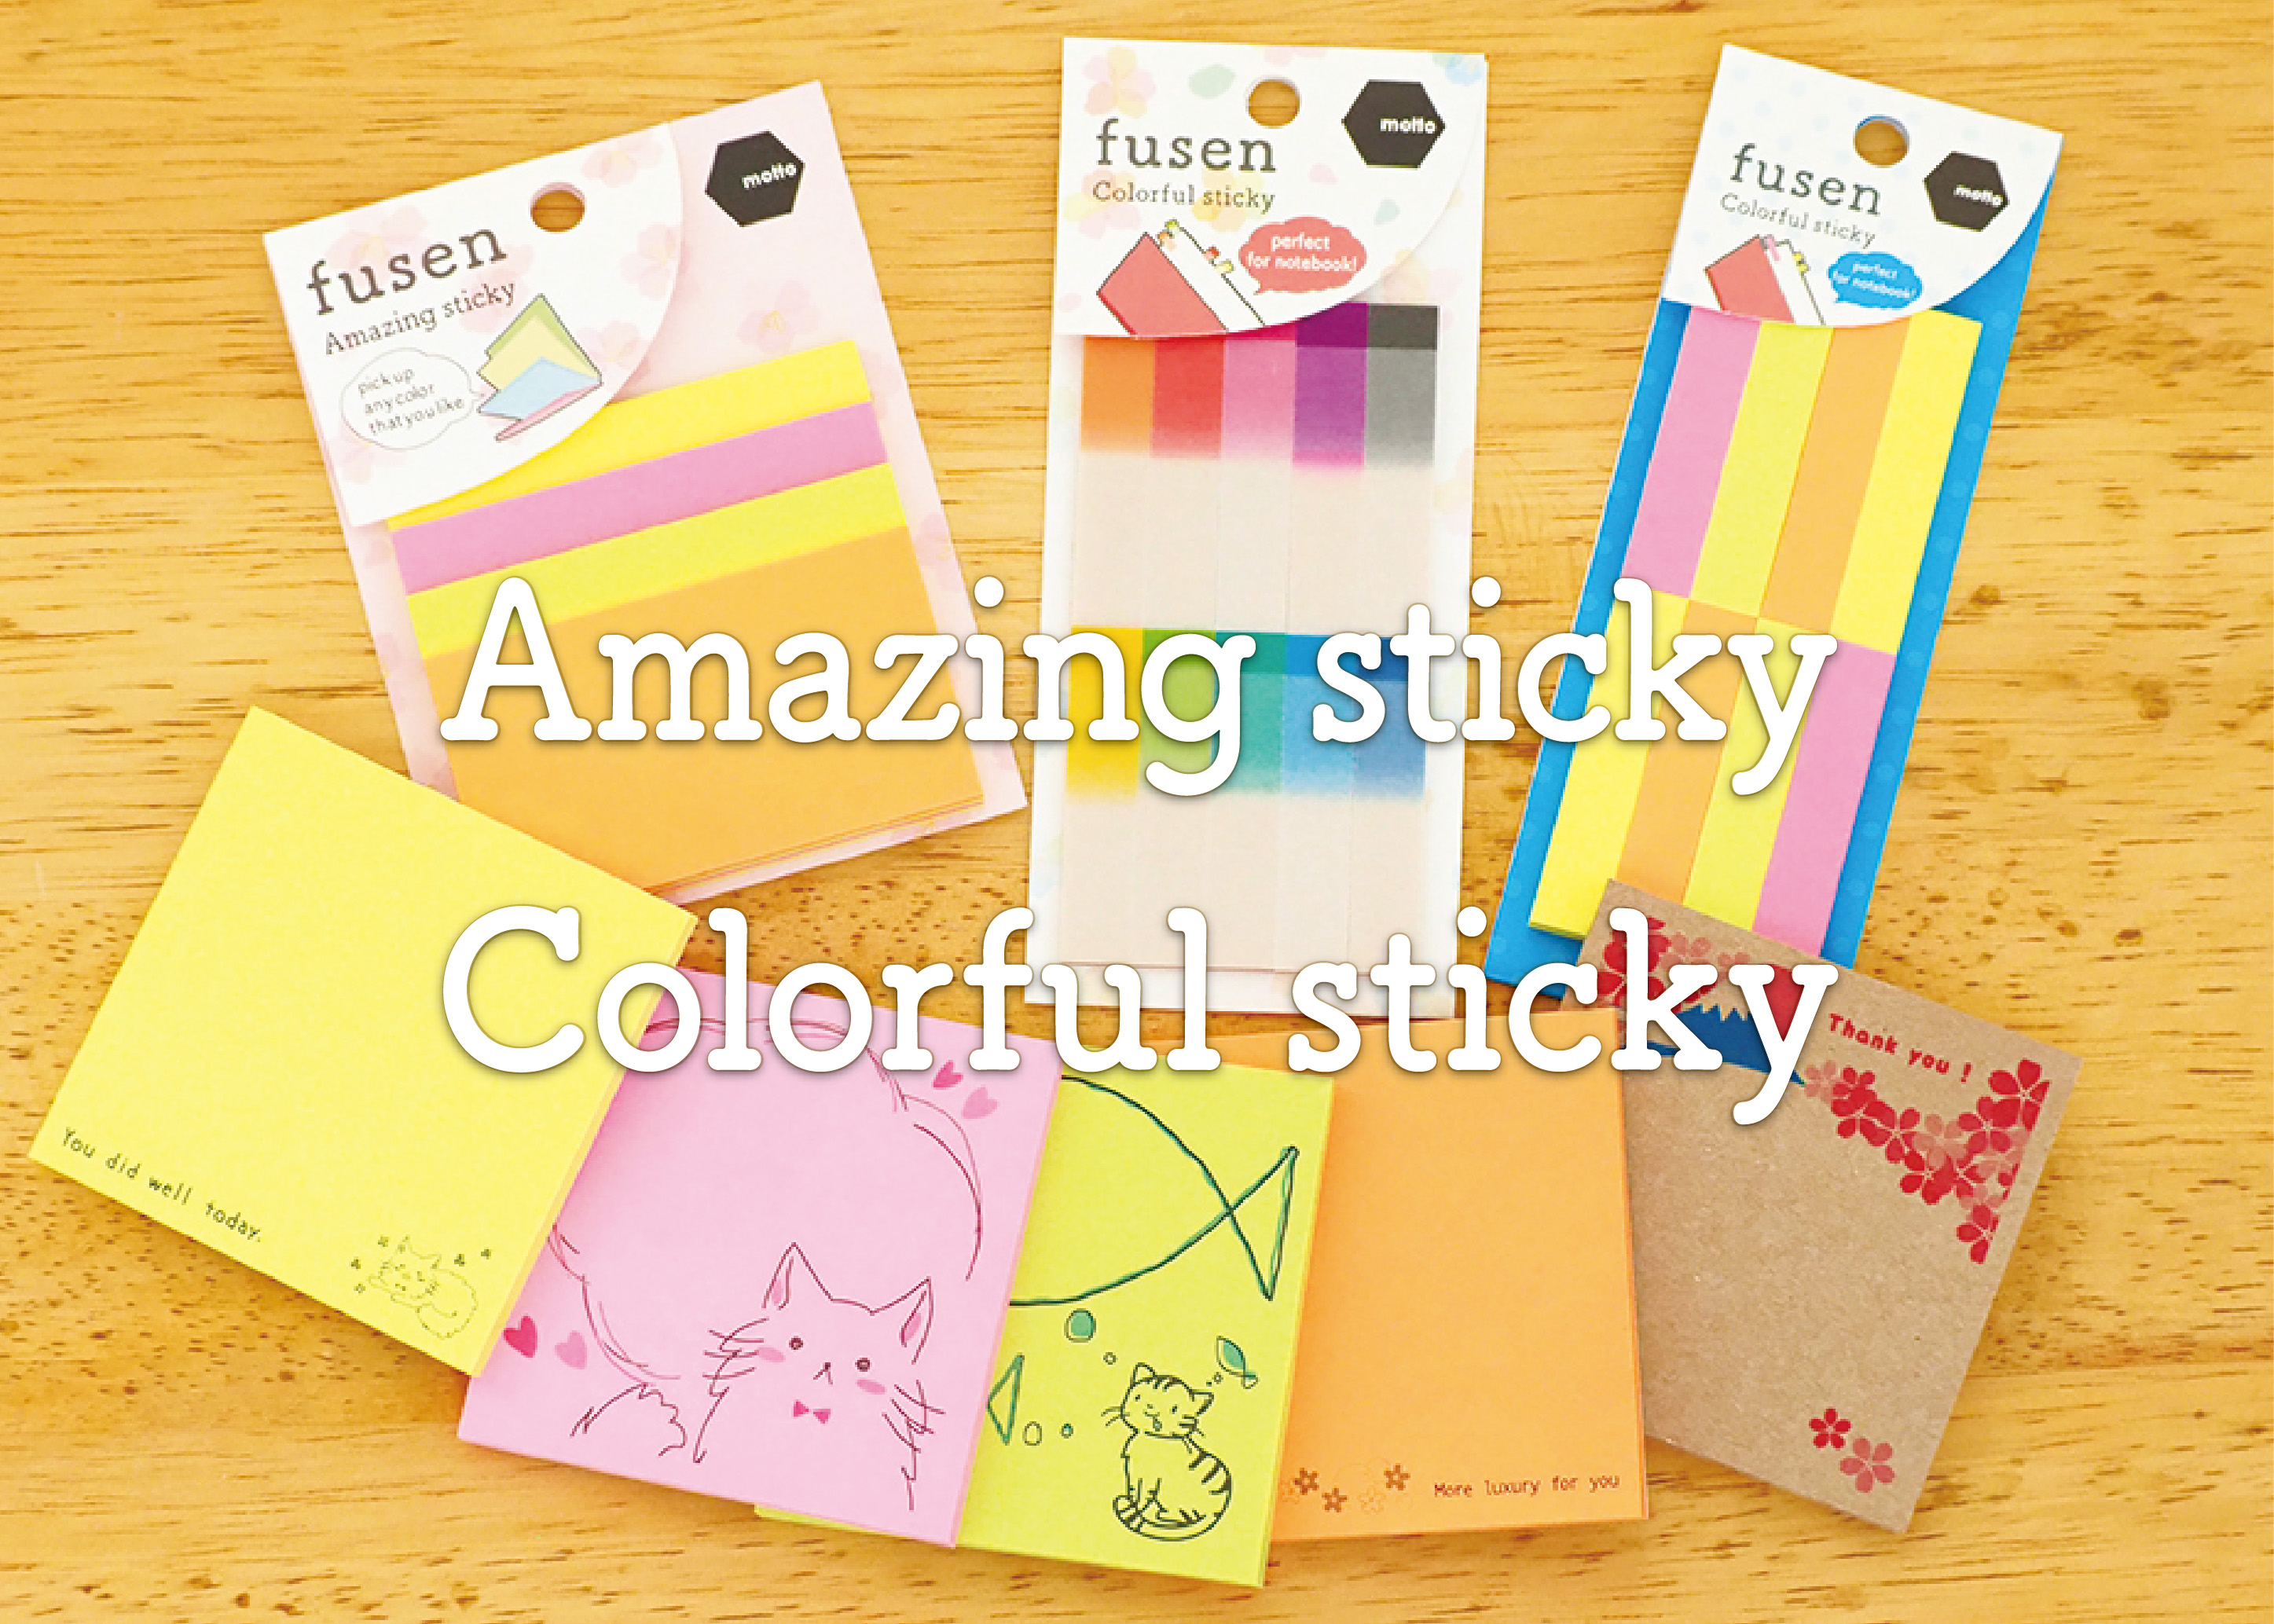 Amazing sticky/Colorful sticky